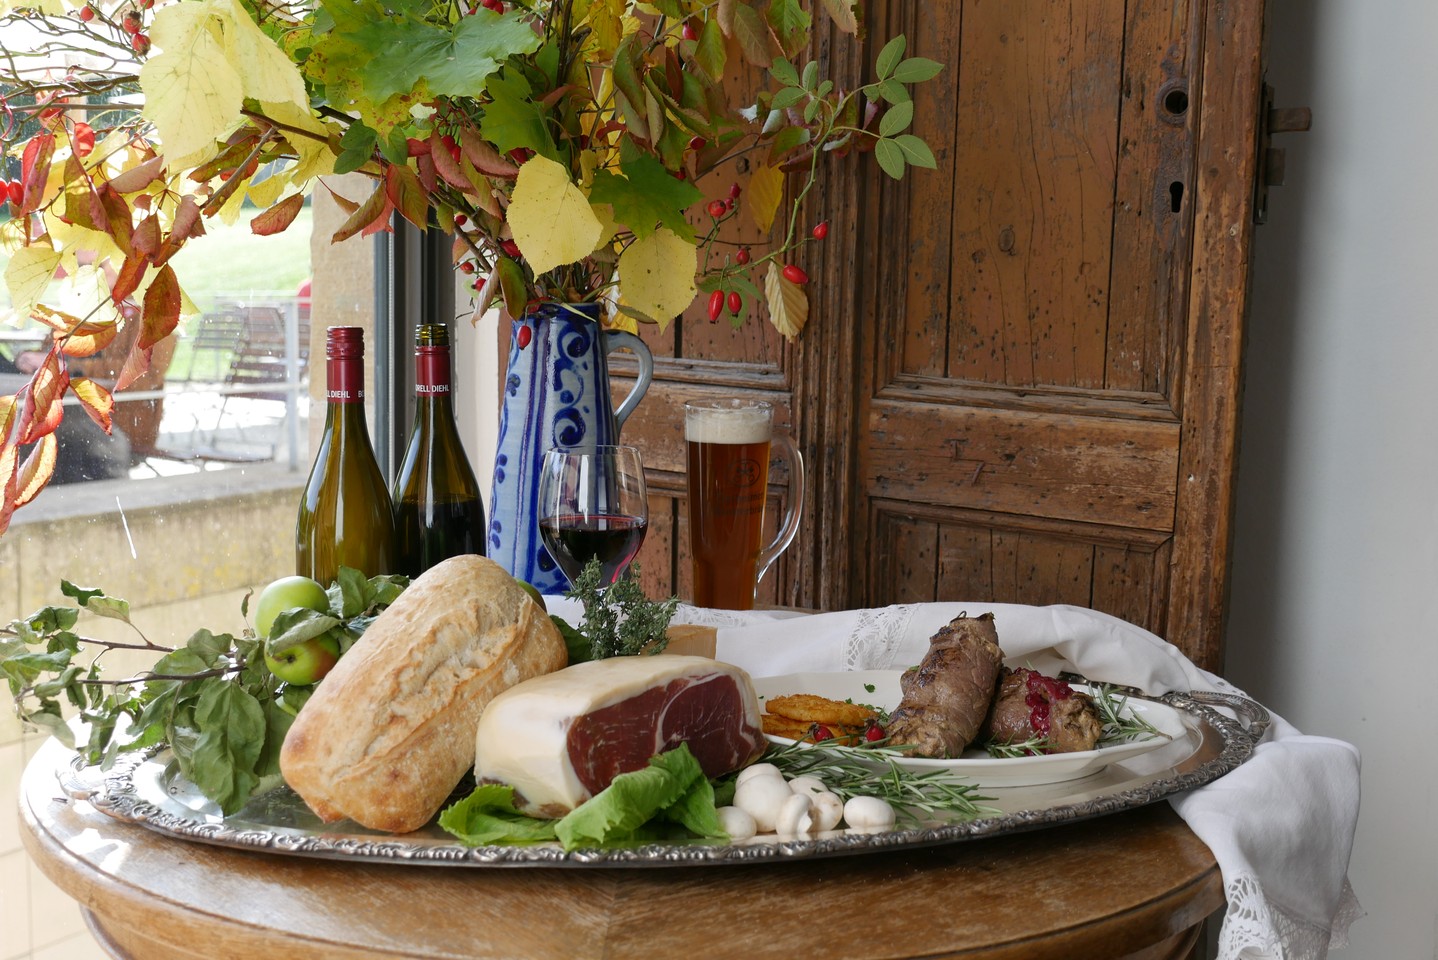 Ein Tisch im Wirtshaus mit Schinken, Brot und anderen Lebensmitteln. Foto: LWL/Kruck